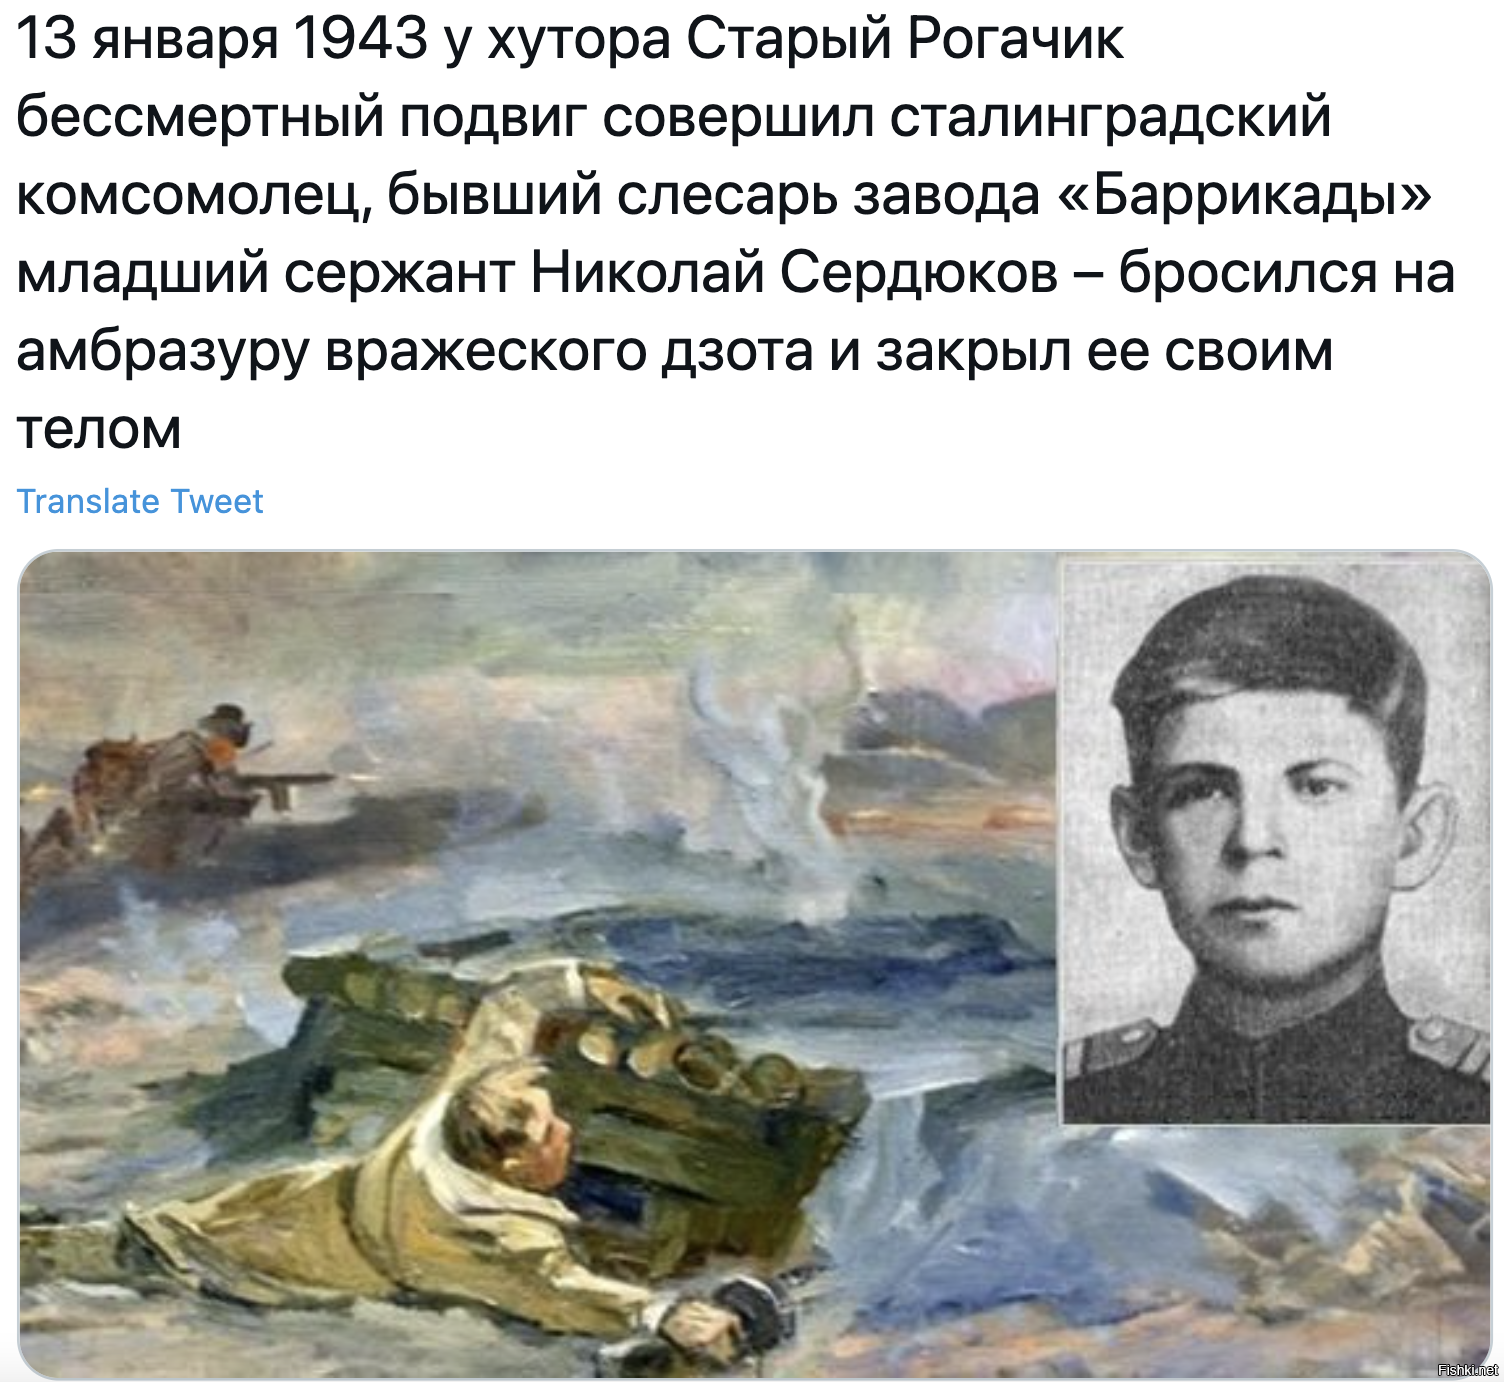 Любой совершенный подвиг. Подвиг Николая Сердюкова в Сталинградской битве.